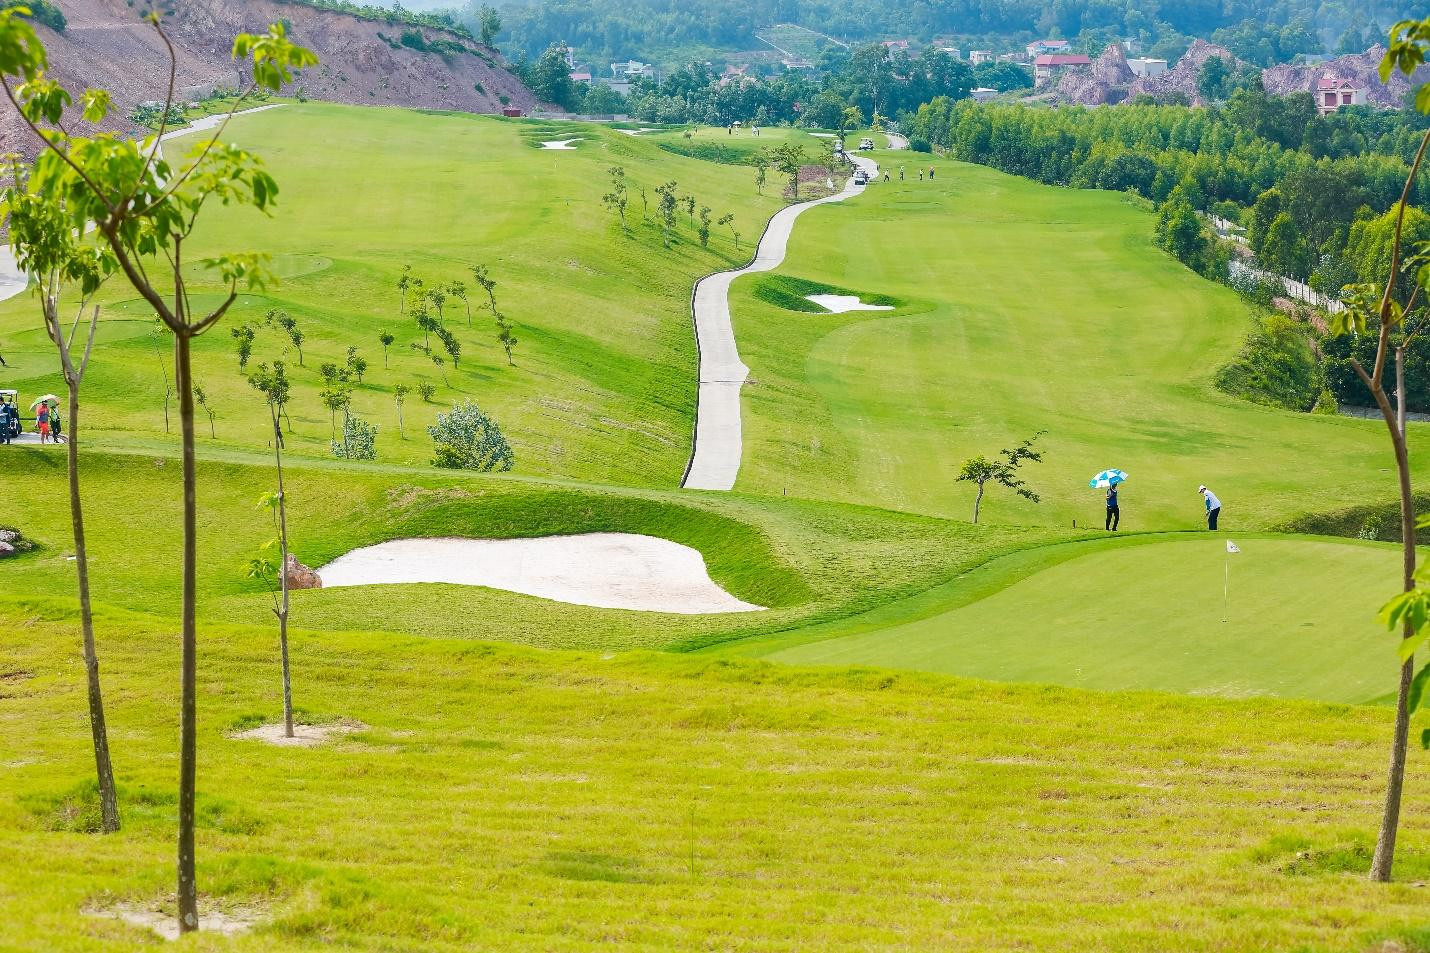 Sân golf Yên Dũng Golf & Resort đổi tên thành Amber Hills Golf & Resort